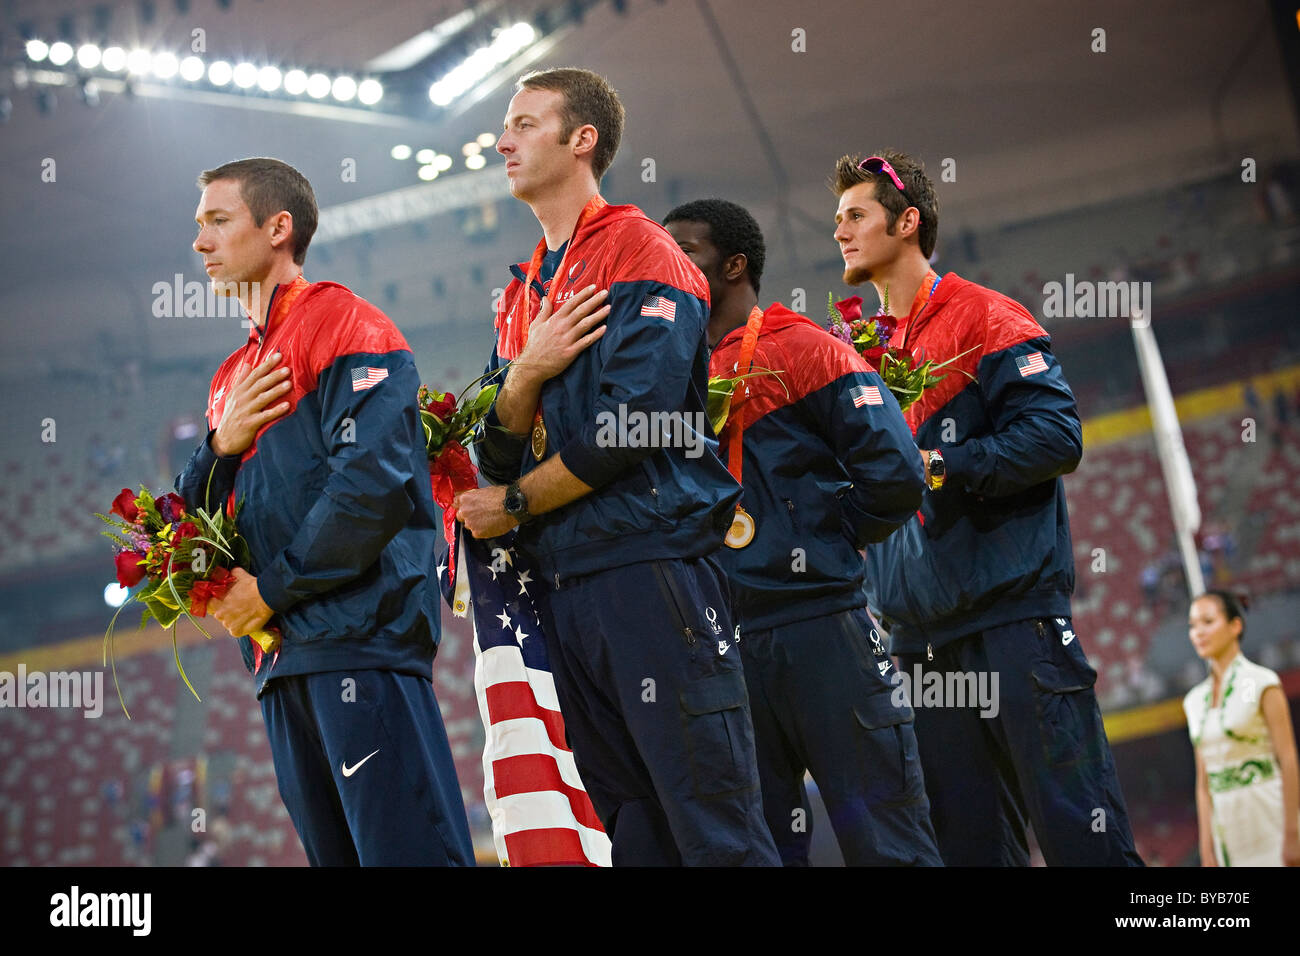 Il team USA festeggiare sul podio con le loro medaglie d oro dopo la vittoria negli uomini T44 4x100m relè finali gara di Pechino 2008 Foto Stock